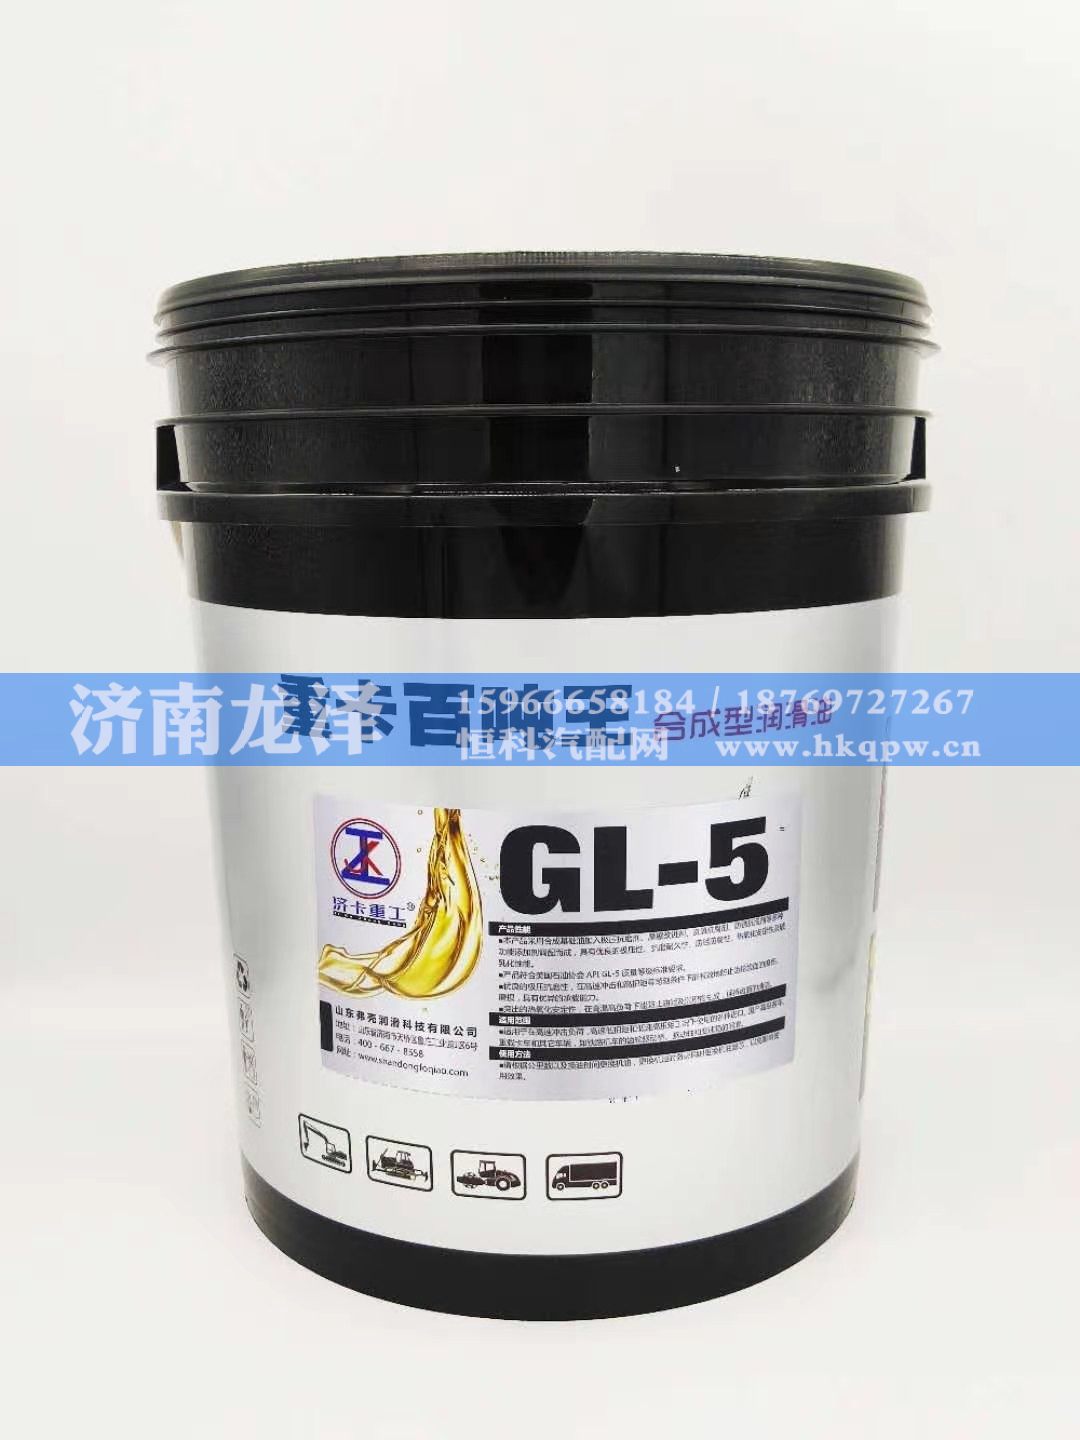 GL-5,合成型润滑油,山东弗壳润滑科技有限公司